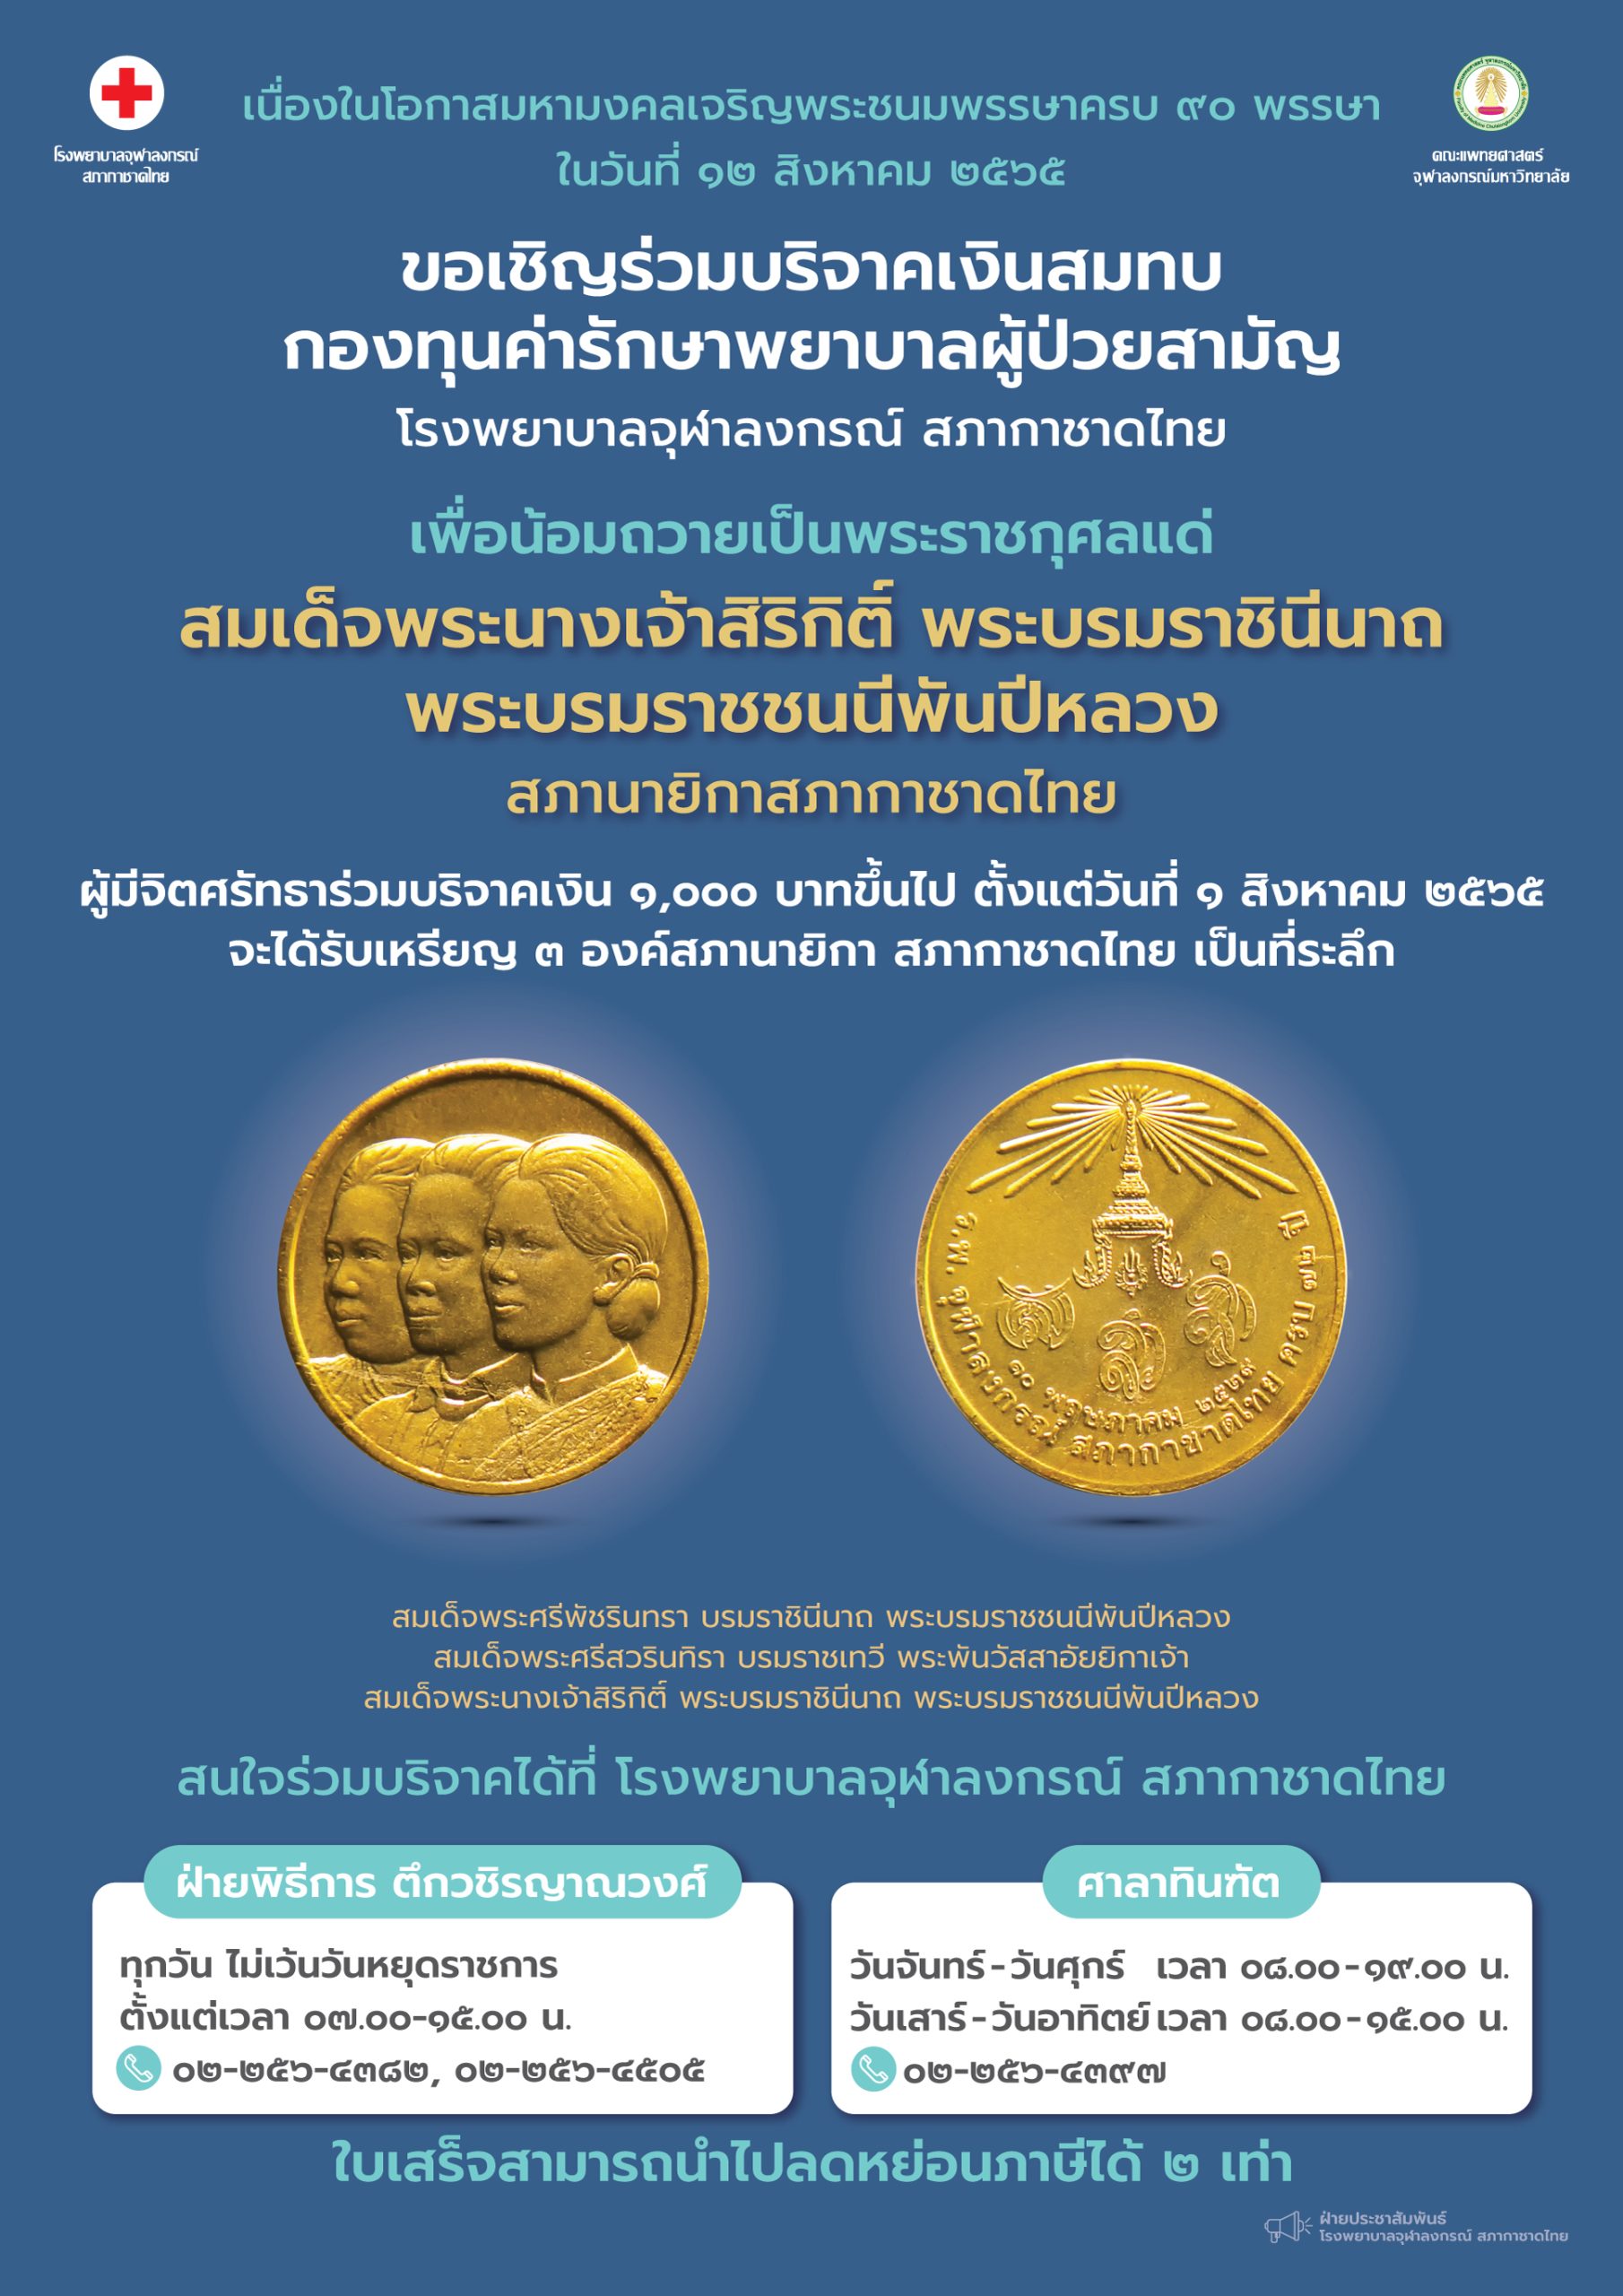 ขอเชิญร่วมบริจาคเงินสมทบกองทุนค่ารักษาพยาบาลผู้ป่วยสามัญโรงพยาบาลจุฬาลงกรณ์ สภากาชาดไทย